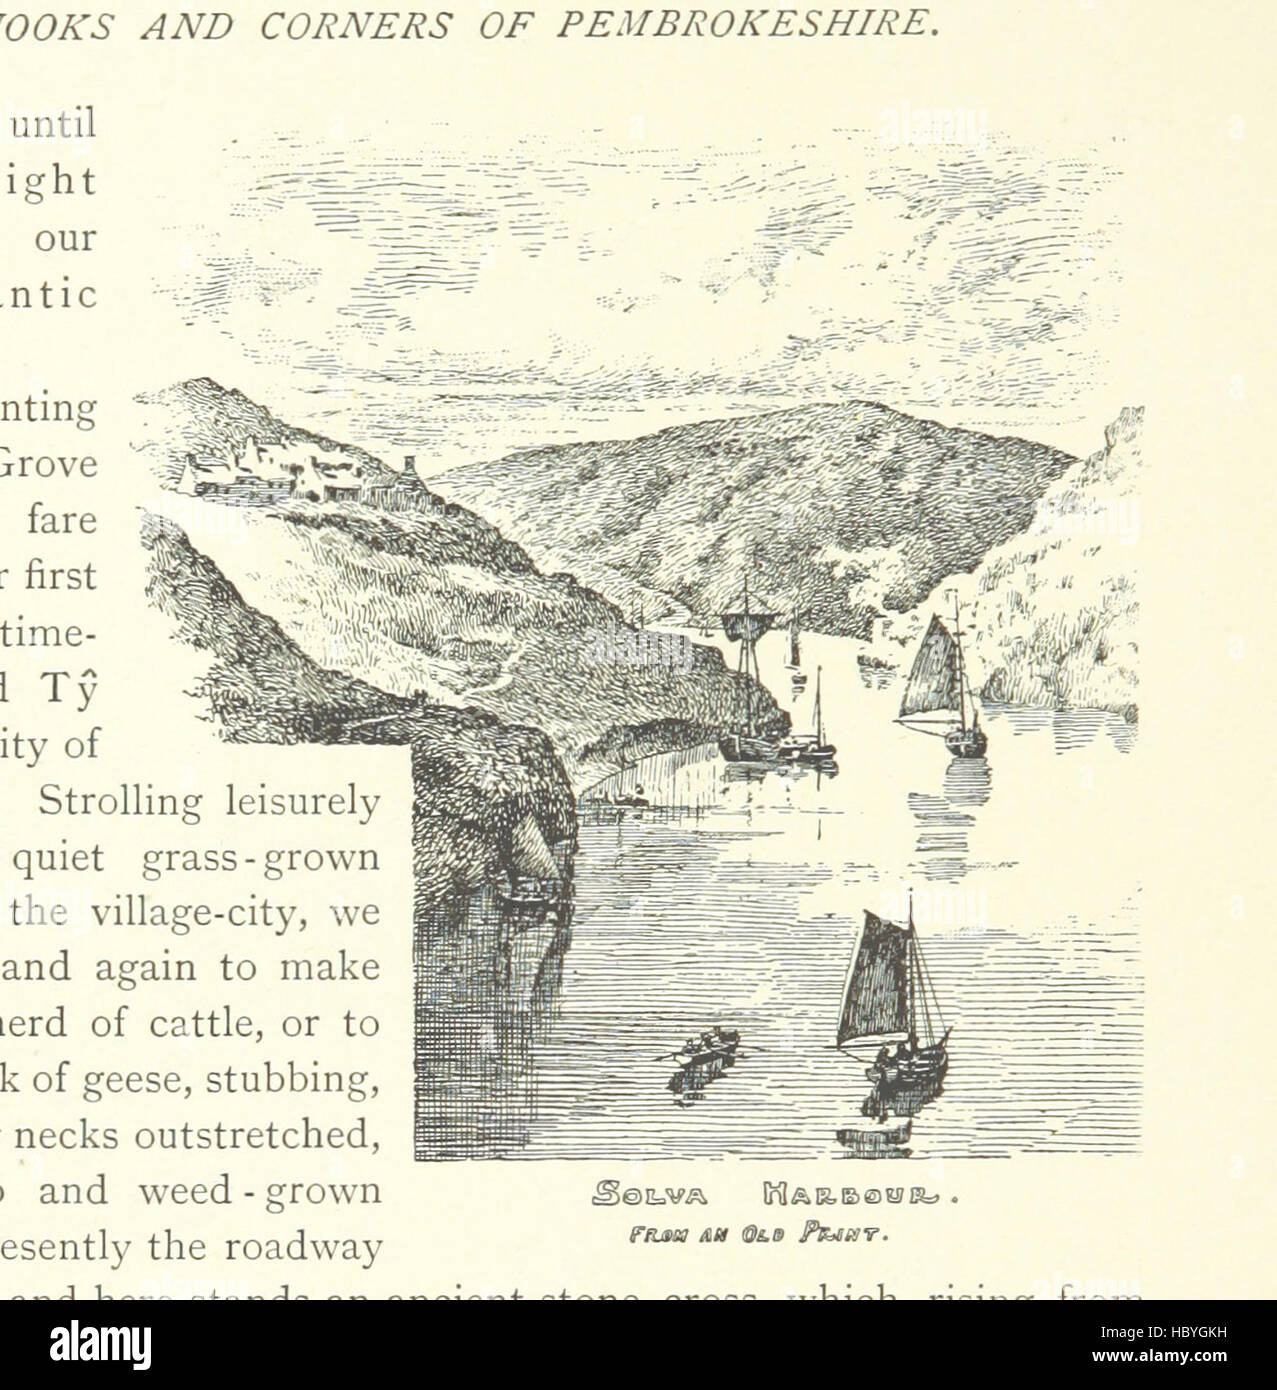 Immagine presa da pagina 166 di "angoli e nicchie di Pembrokeshire. Disegnata e descritta da H. T. Timmins. L.P' immagine presa da pagina 166 di "angoli e nicchie di Foto Stock